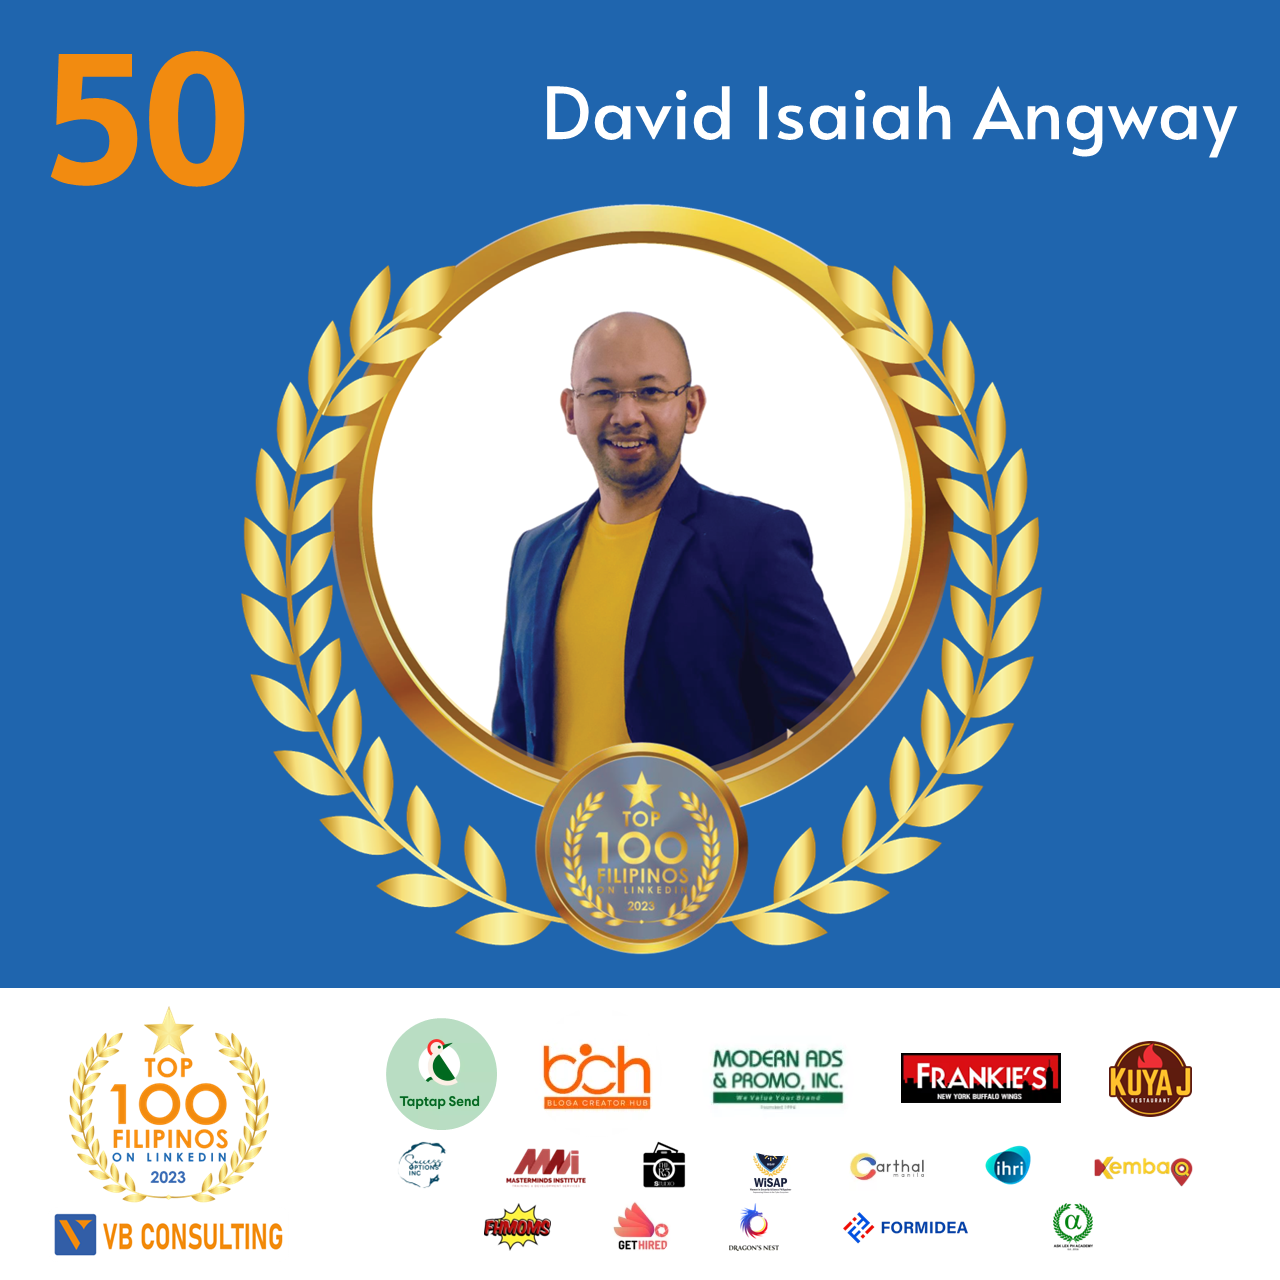 David Isaiah Angway